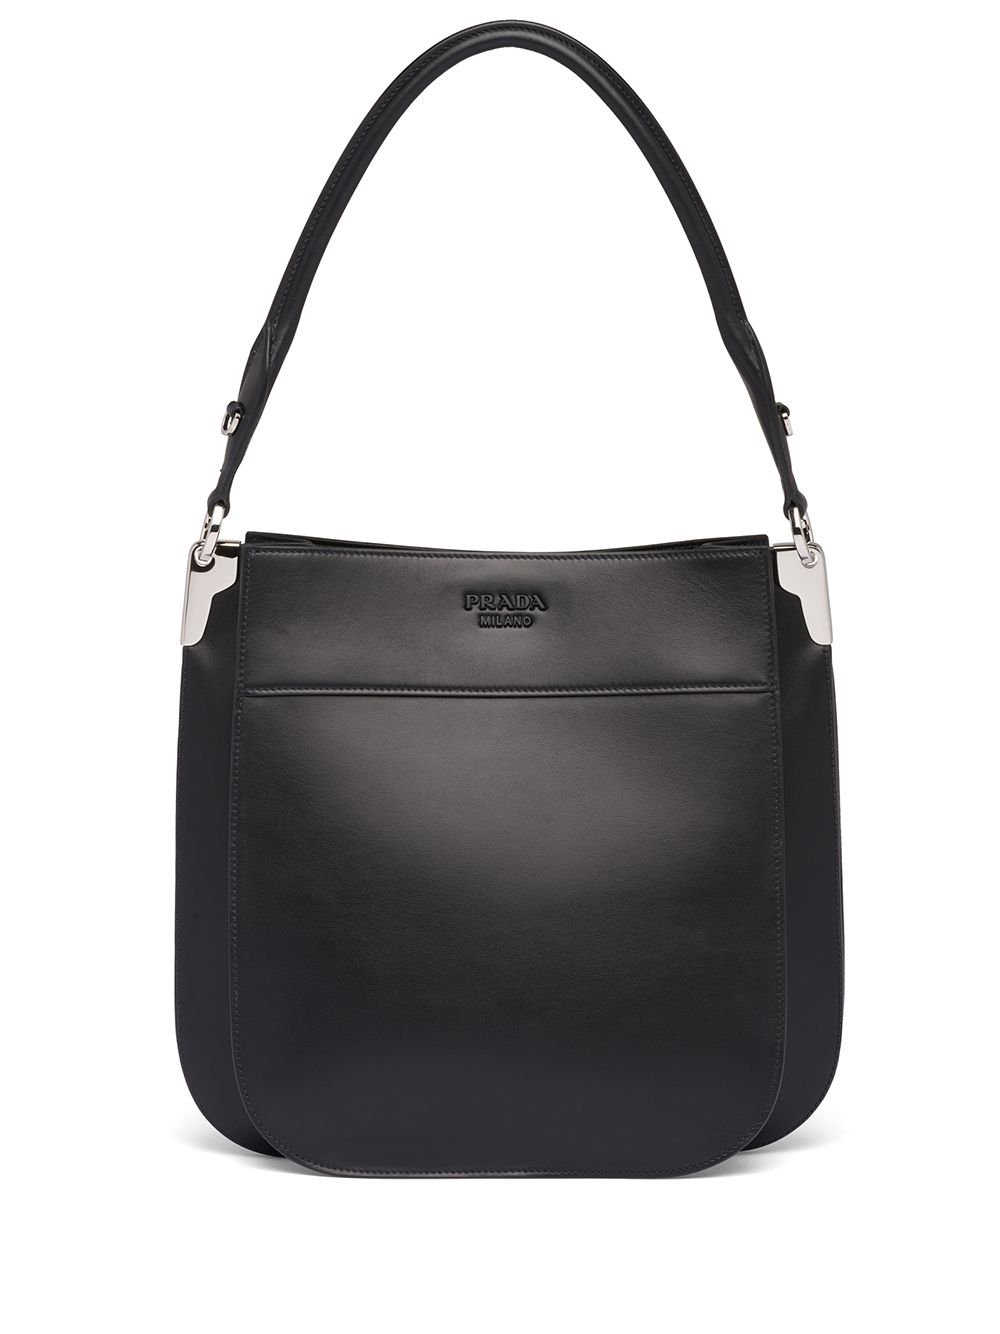 Prada - Prada Margit Small Calfskin Shoulder Bag